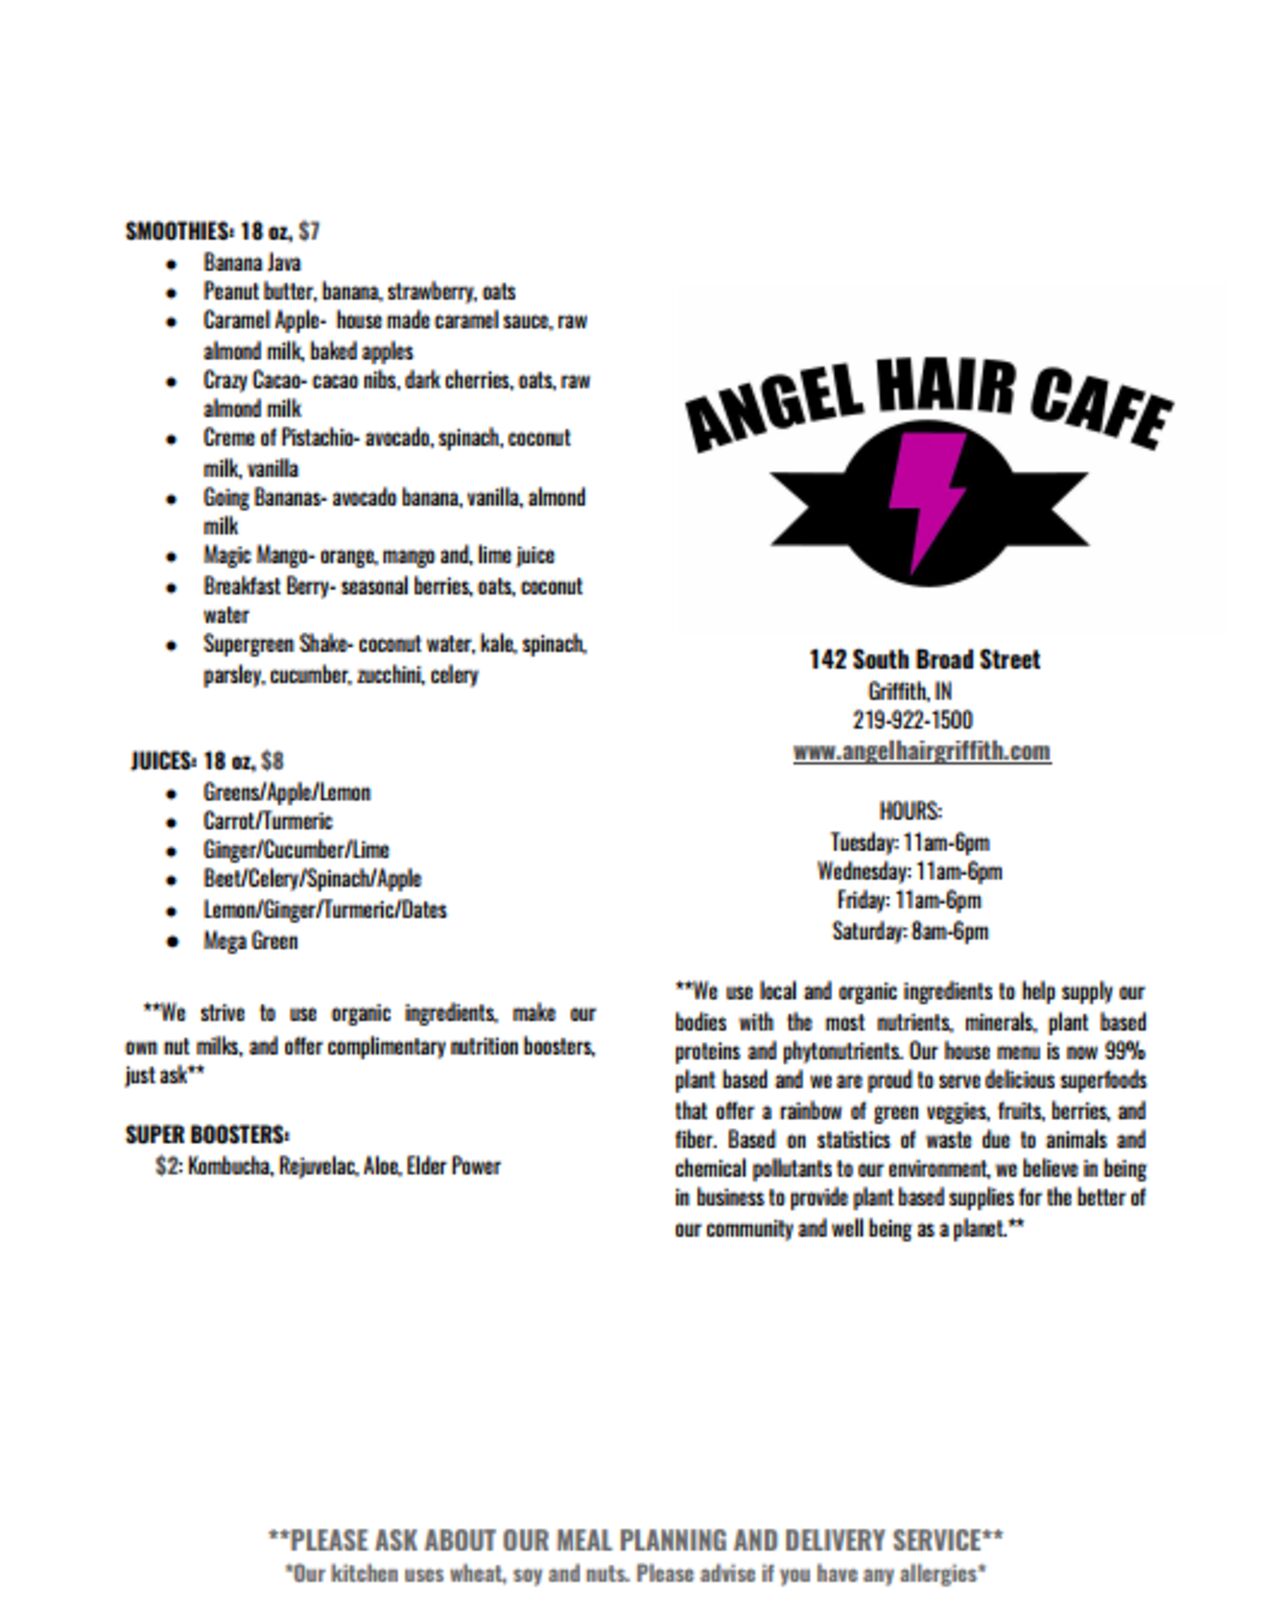 A photo of Angel Hair Café